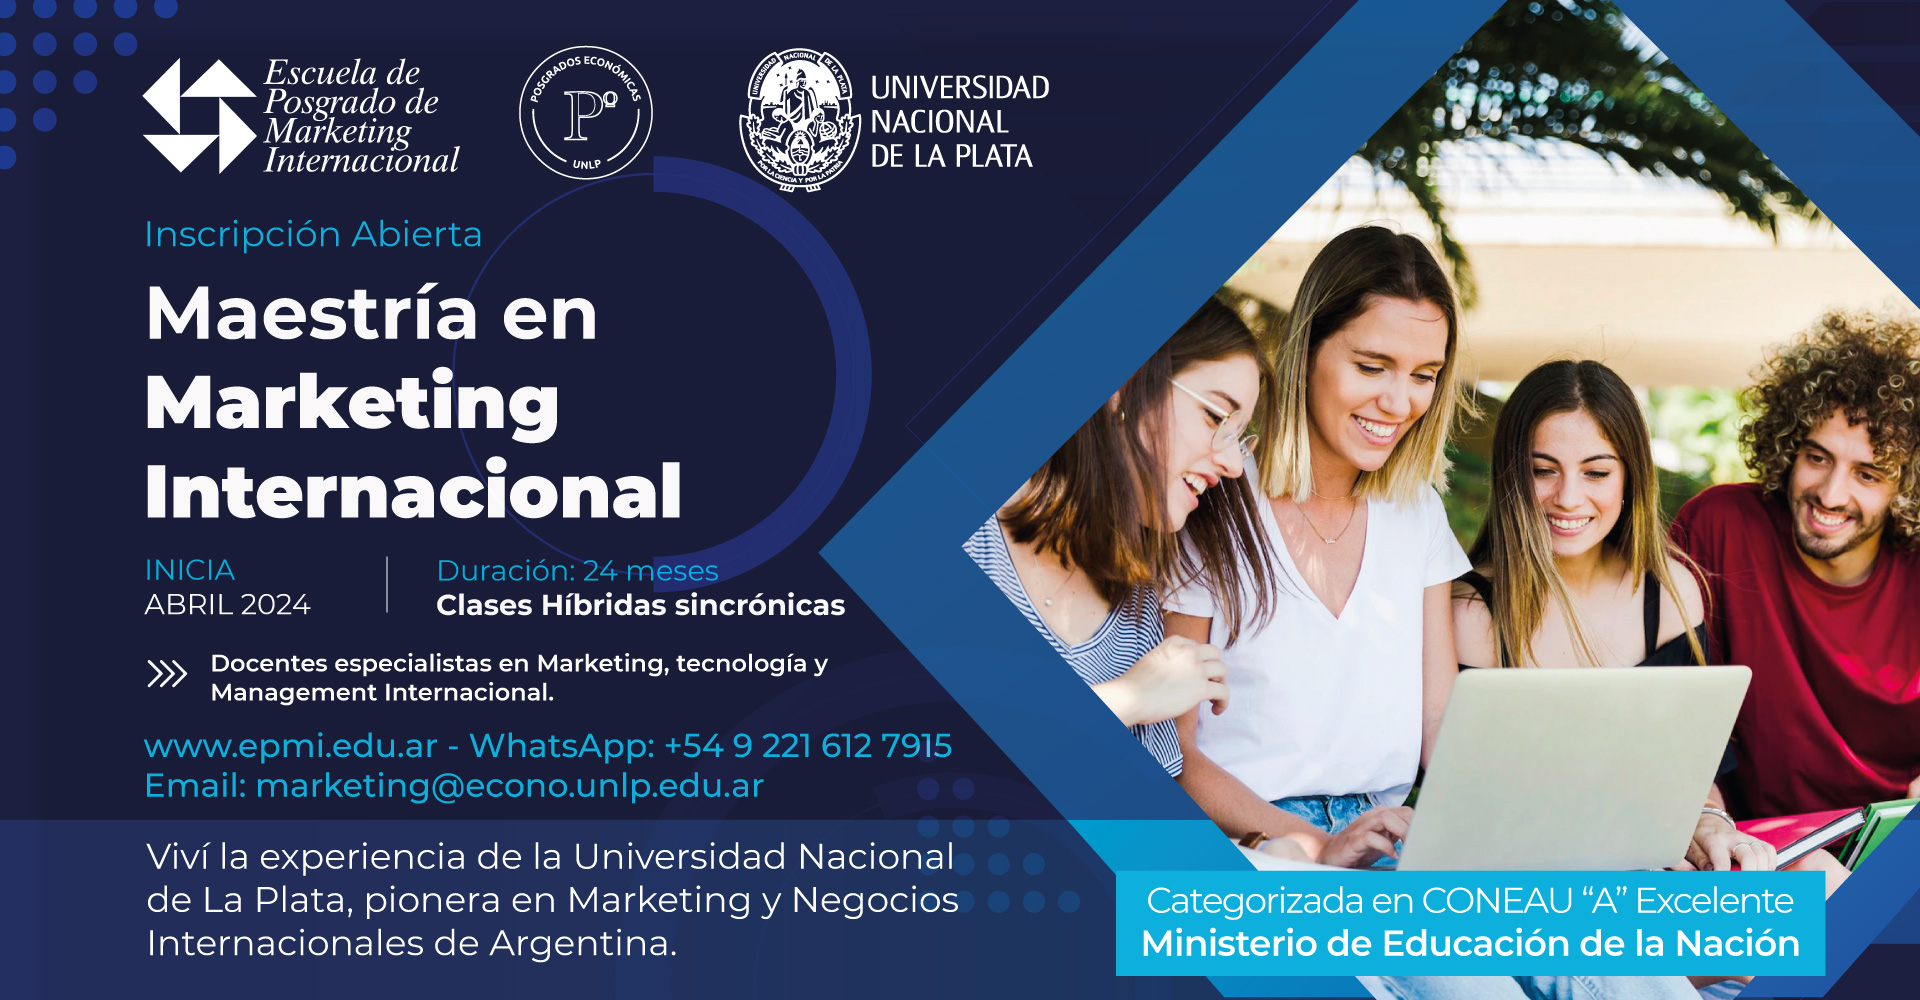 Maestría en Marketing Internacional de la Facultad de Ciencias Económicas de la Universidad Nacional de La Plata